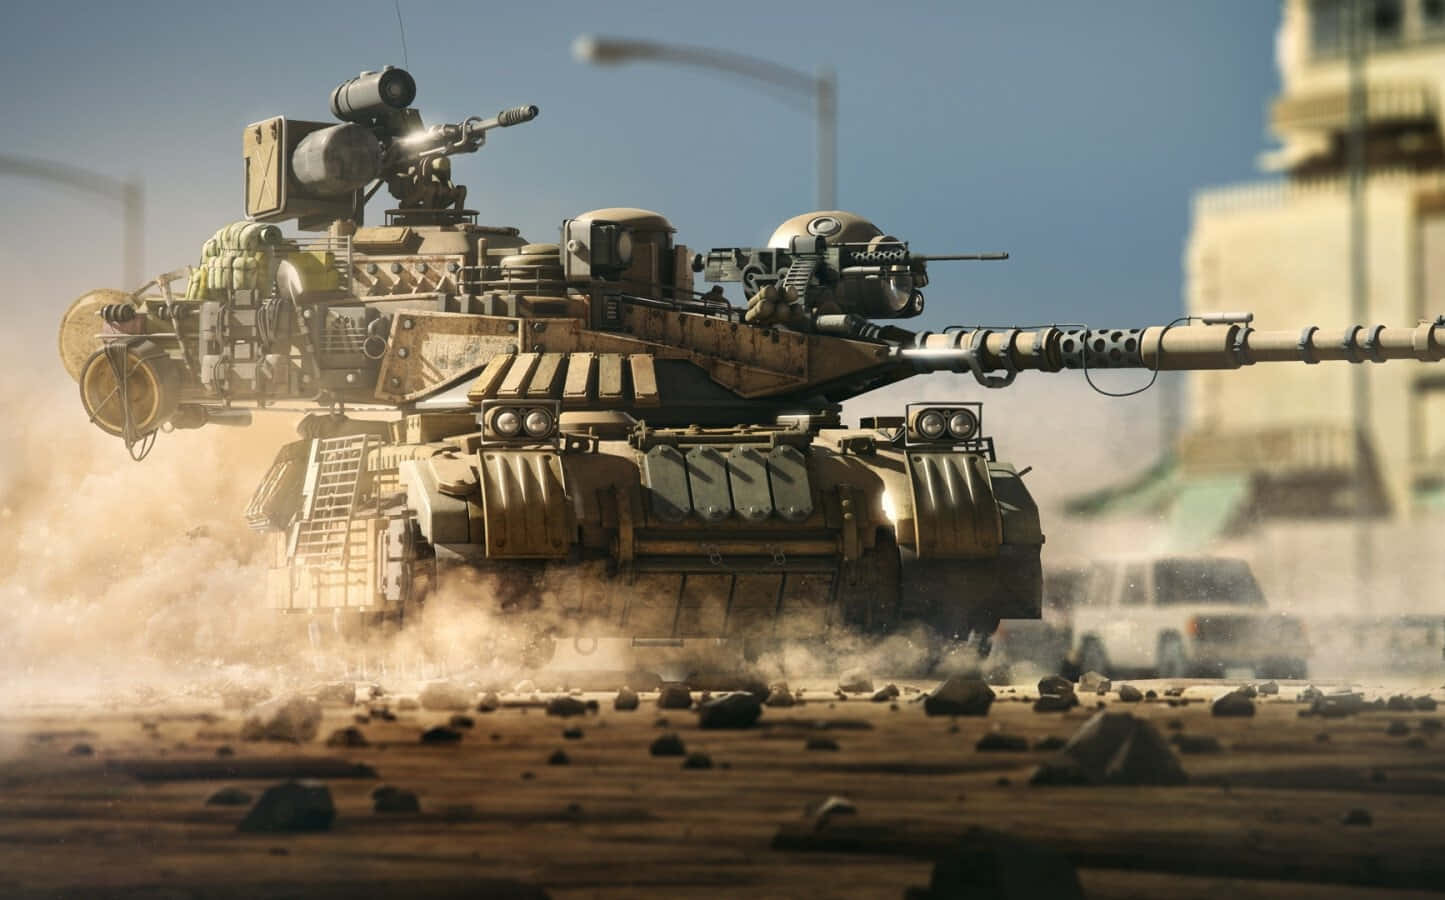 Battlefield tank traversing through rough terrain Wallpaper